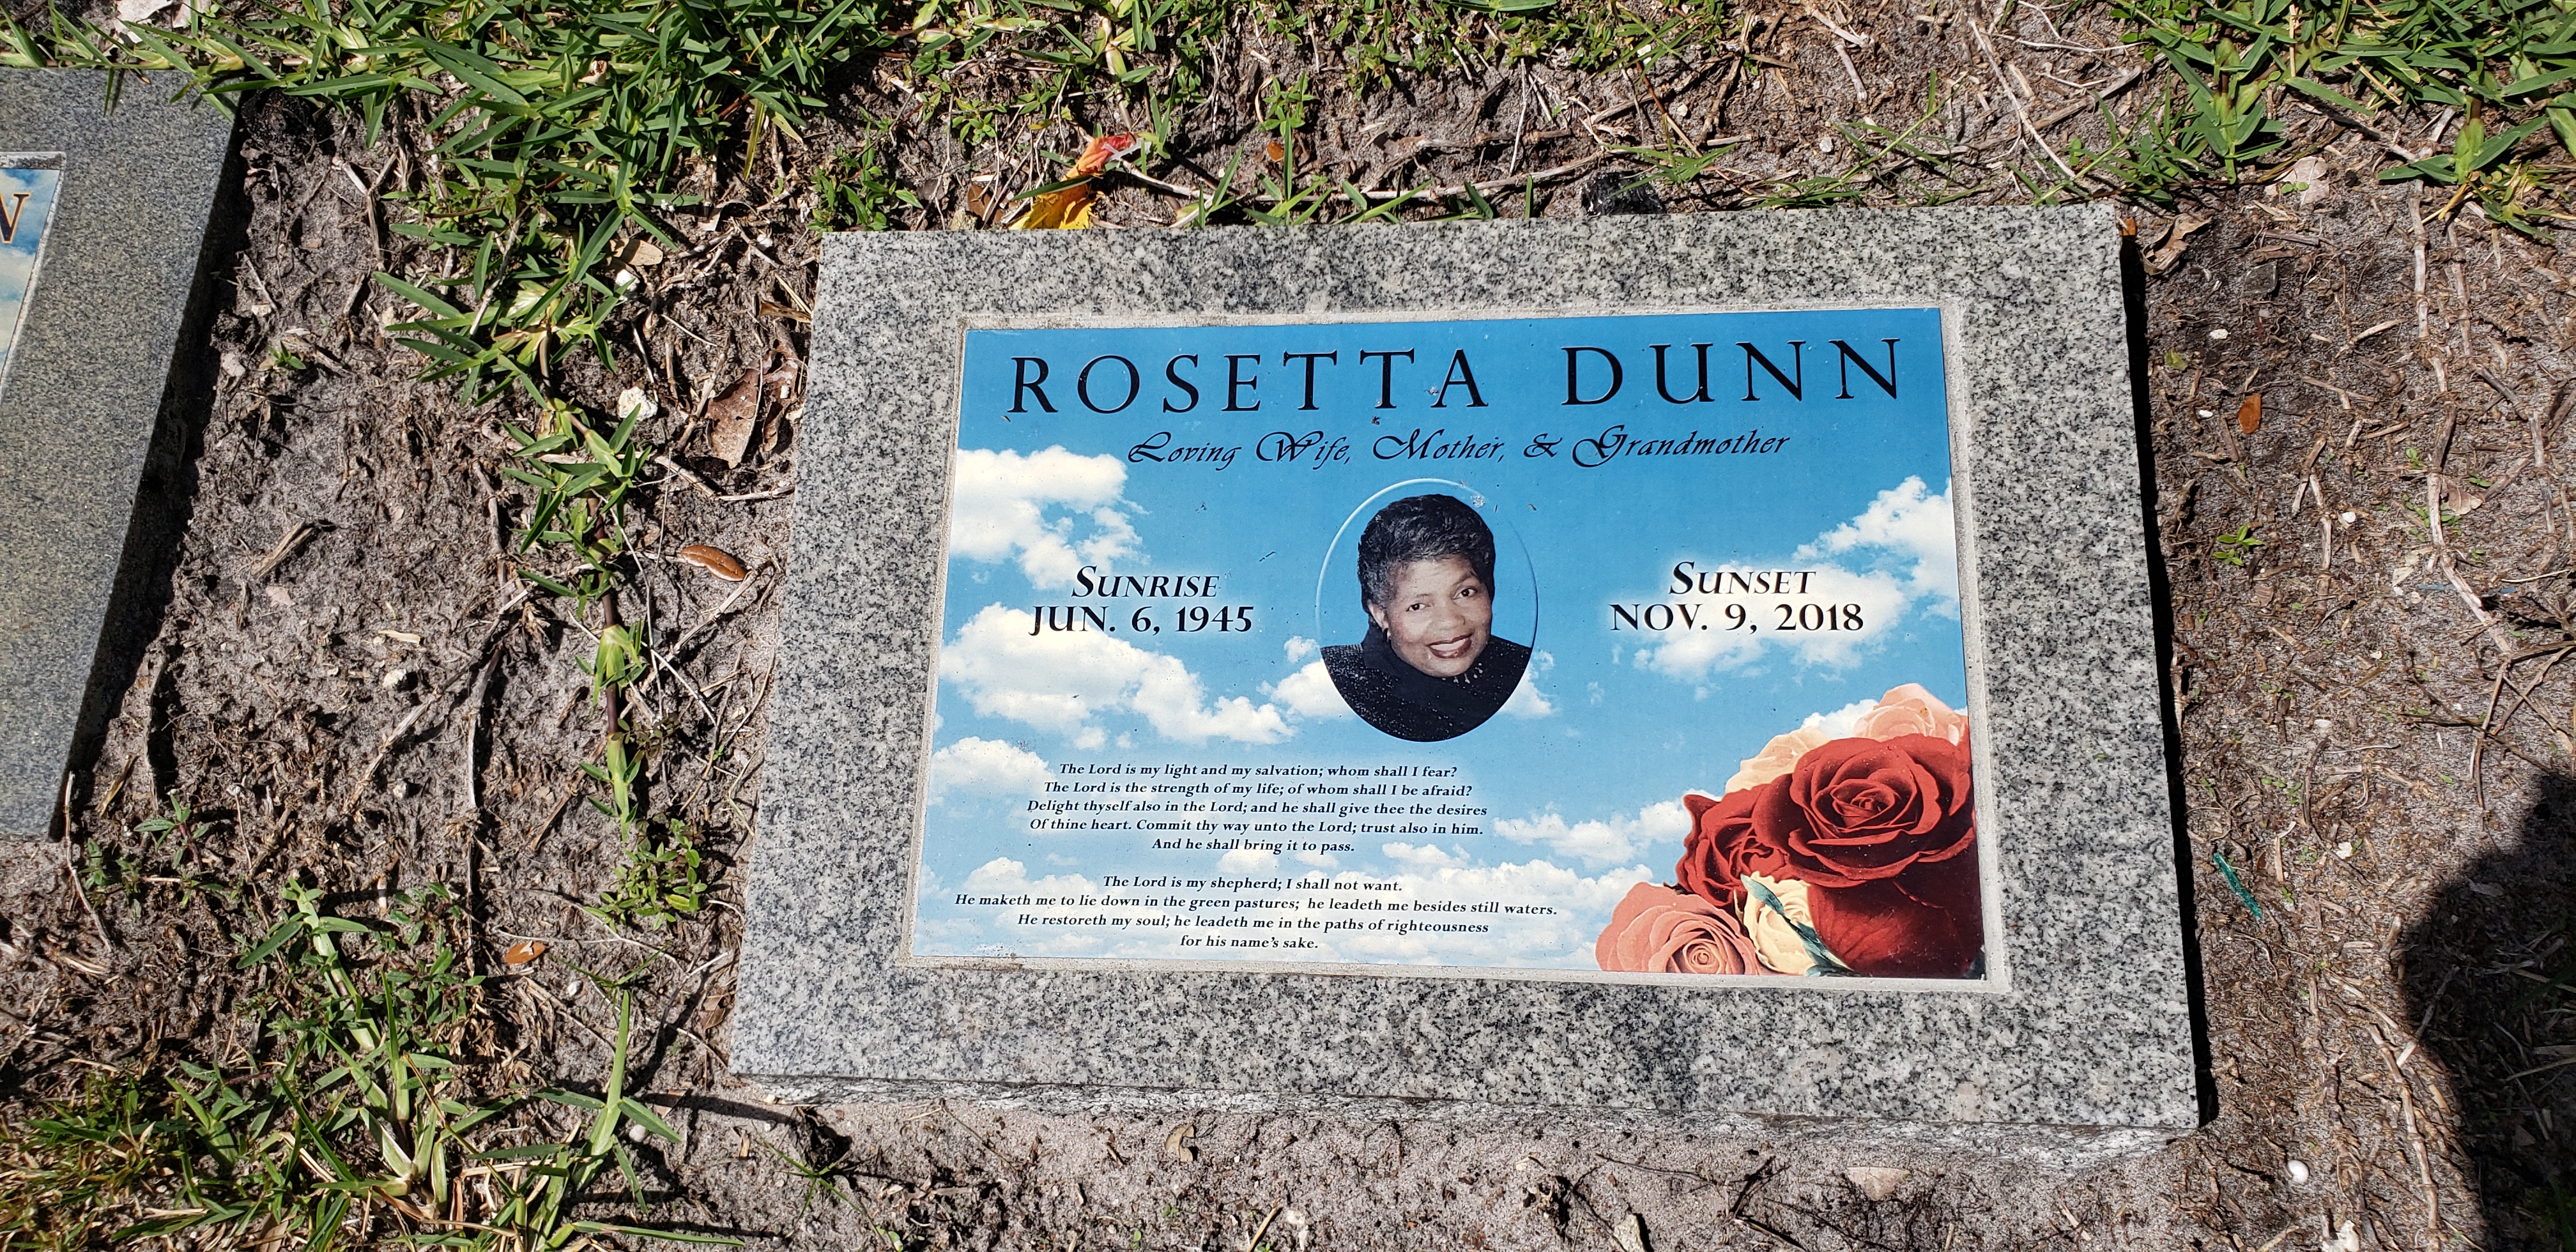 Rosetta Dunn